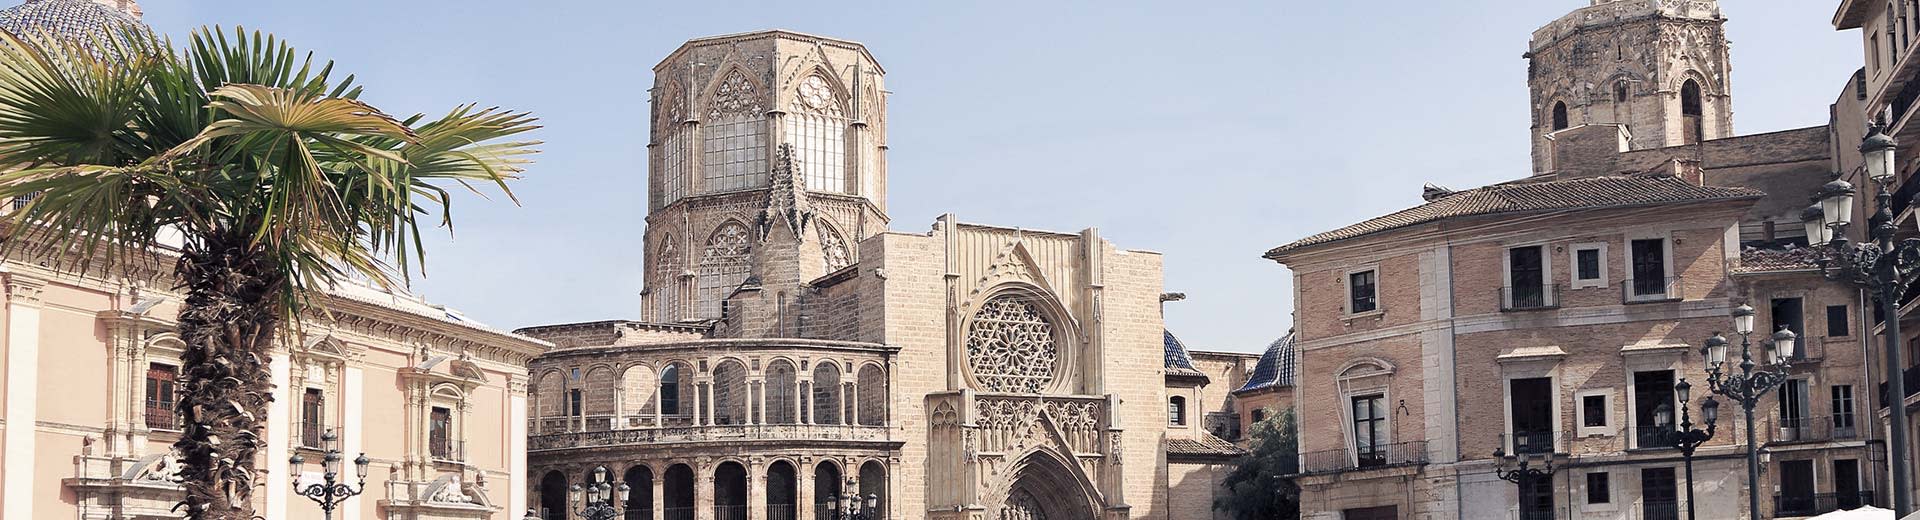 明るく晴れた日のバレンシアの美しいムーア建築。